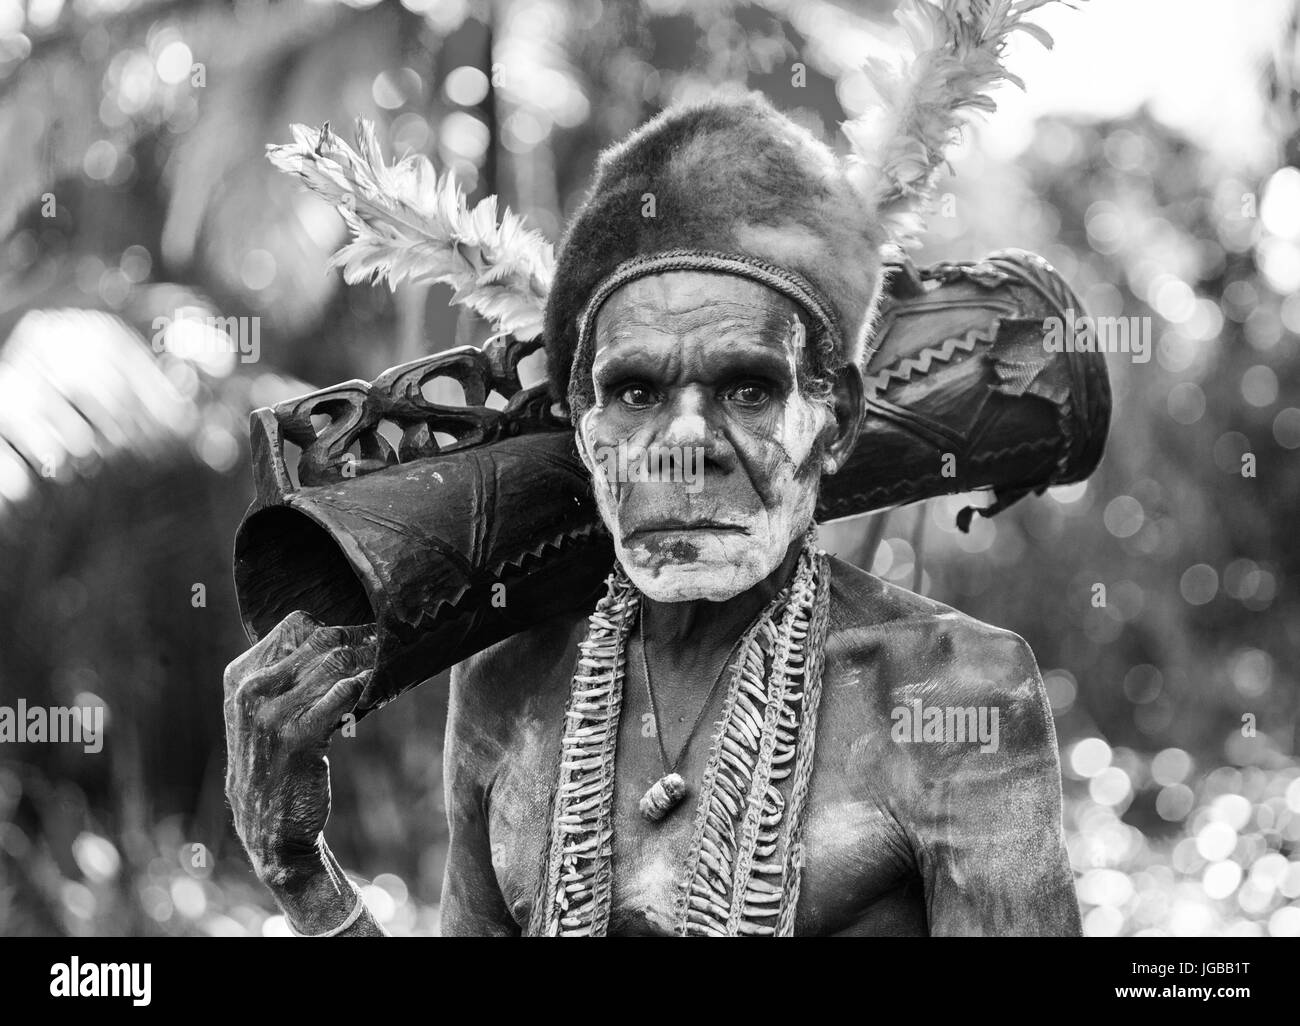 Indonesien, IRIAN JAYA, ASMAT Provinz, JOW Dorf - Juni 12: Porträt eines Kriegers Asmat-Stammes mit einer Schamanentrommel. Stockfoto